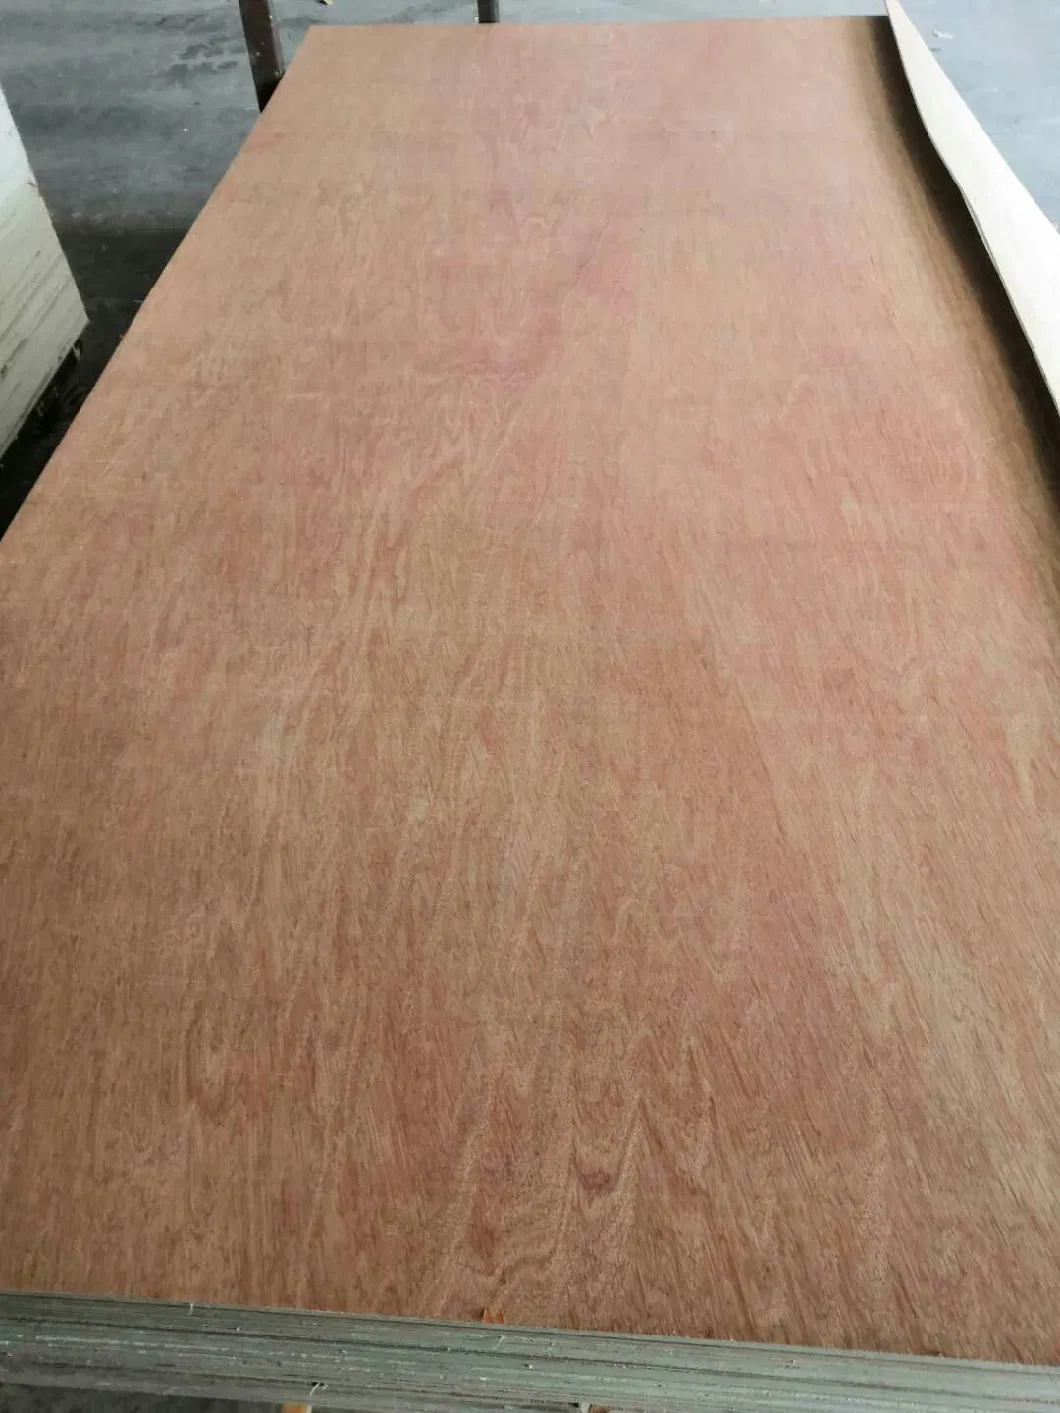 Okumen/ Bintangor/Pine Plywood Floor Board with Yellow Color